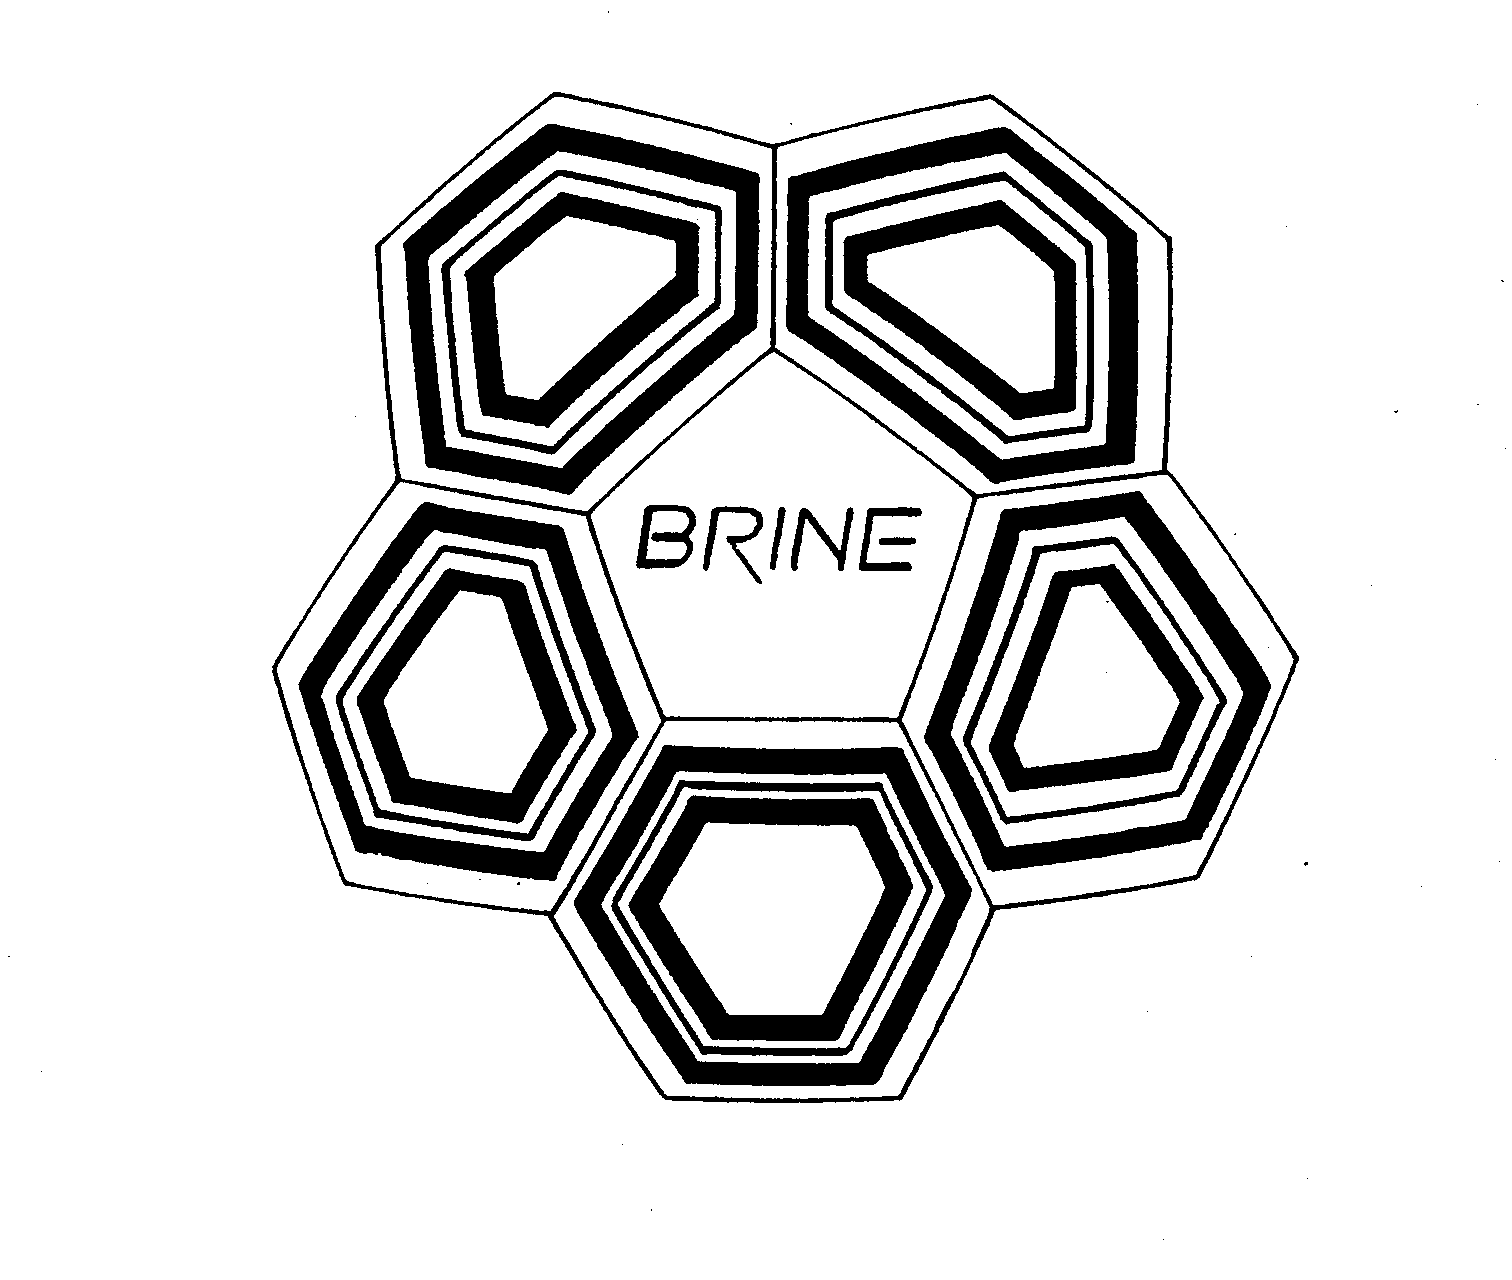 Trademark Logo BRINE